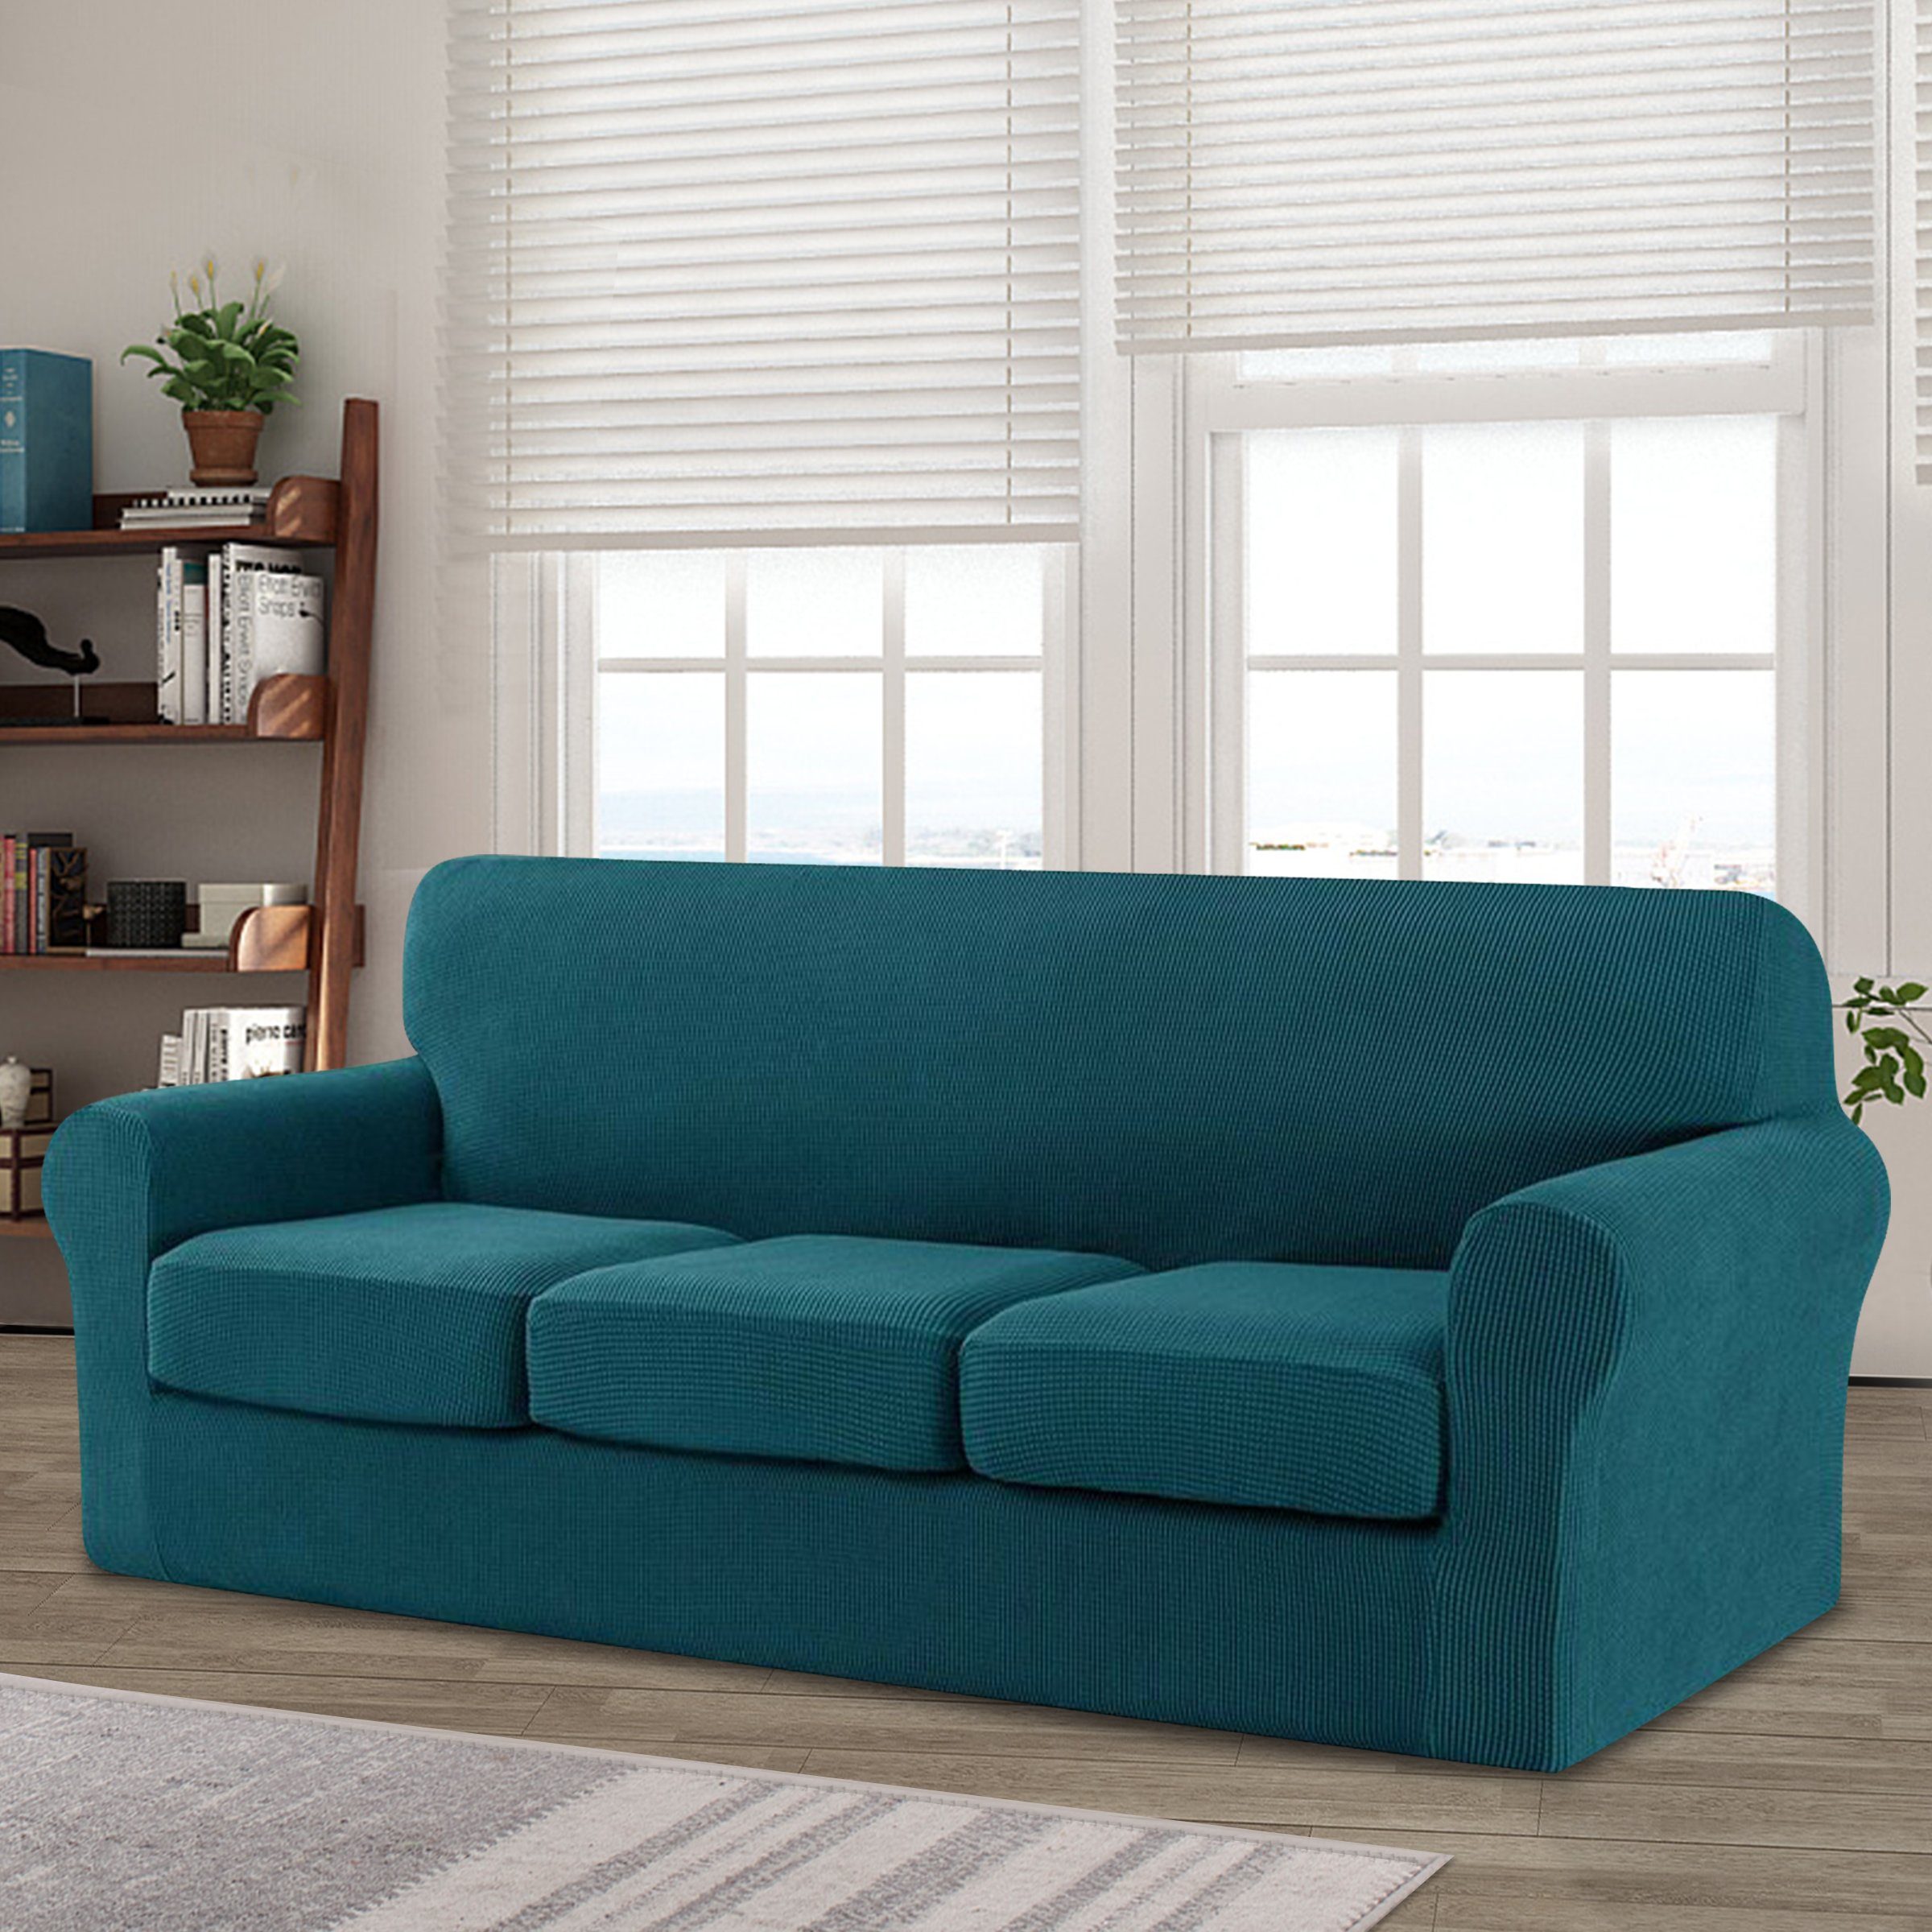 Sofahusse CHUNYI 2/3 Sitzer Sofabezug mit separaten Sofakissenbezügen, CHUNYI, mit leichtem Struktur-Effekt, mit separaten Sofakissenbezügen blaugrün